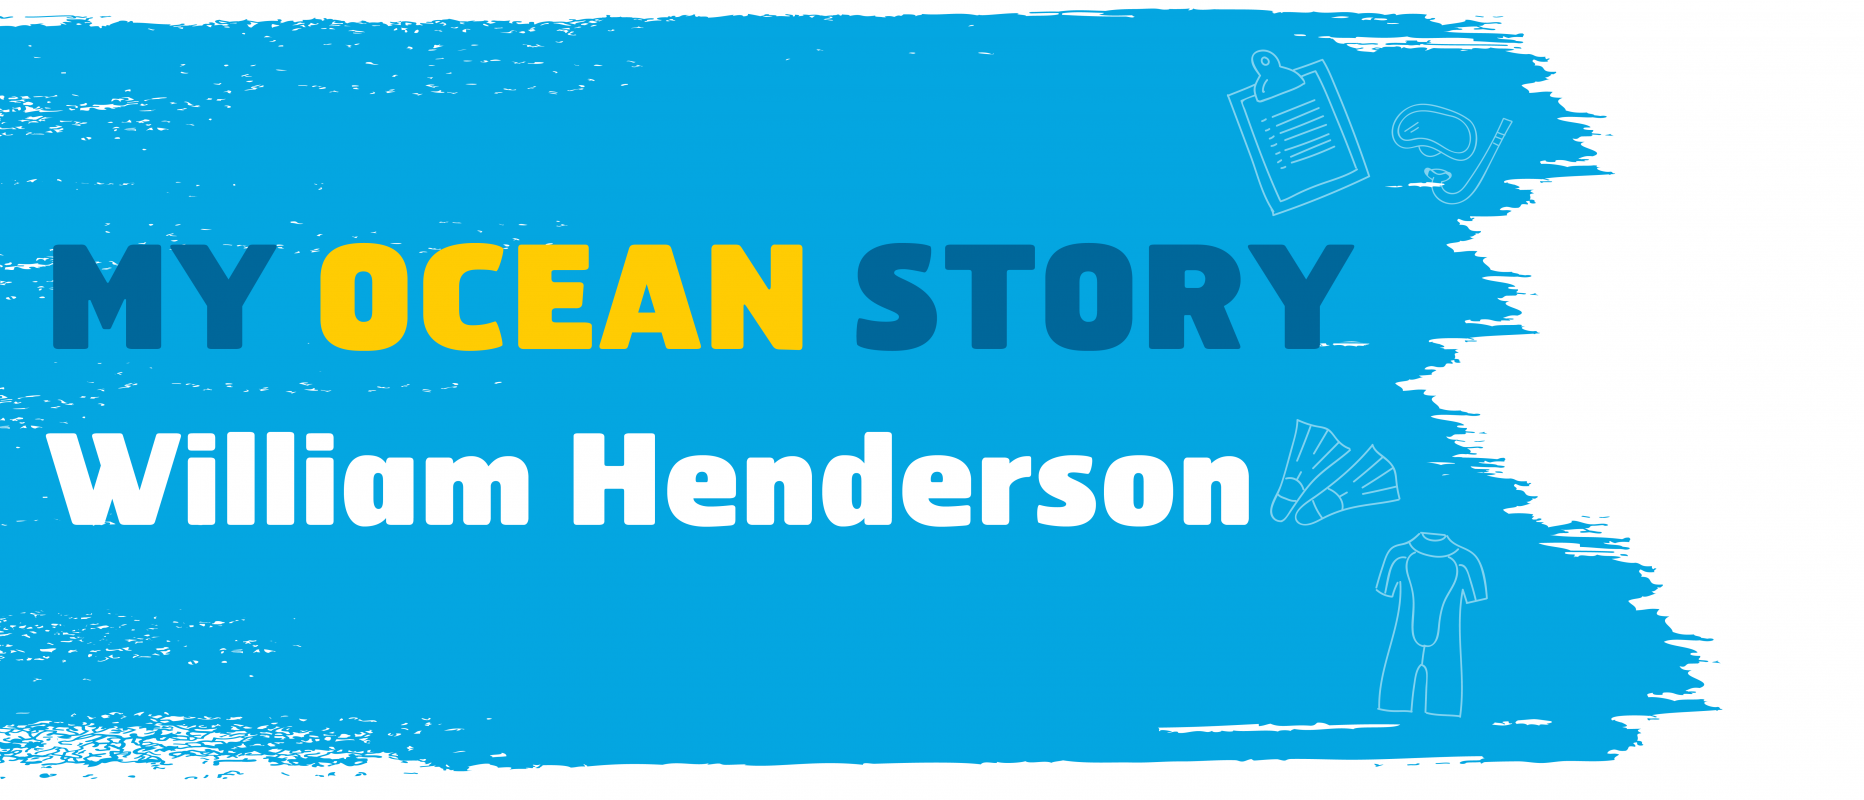 My Ocean Story William Henderson 